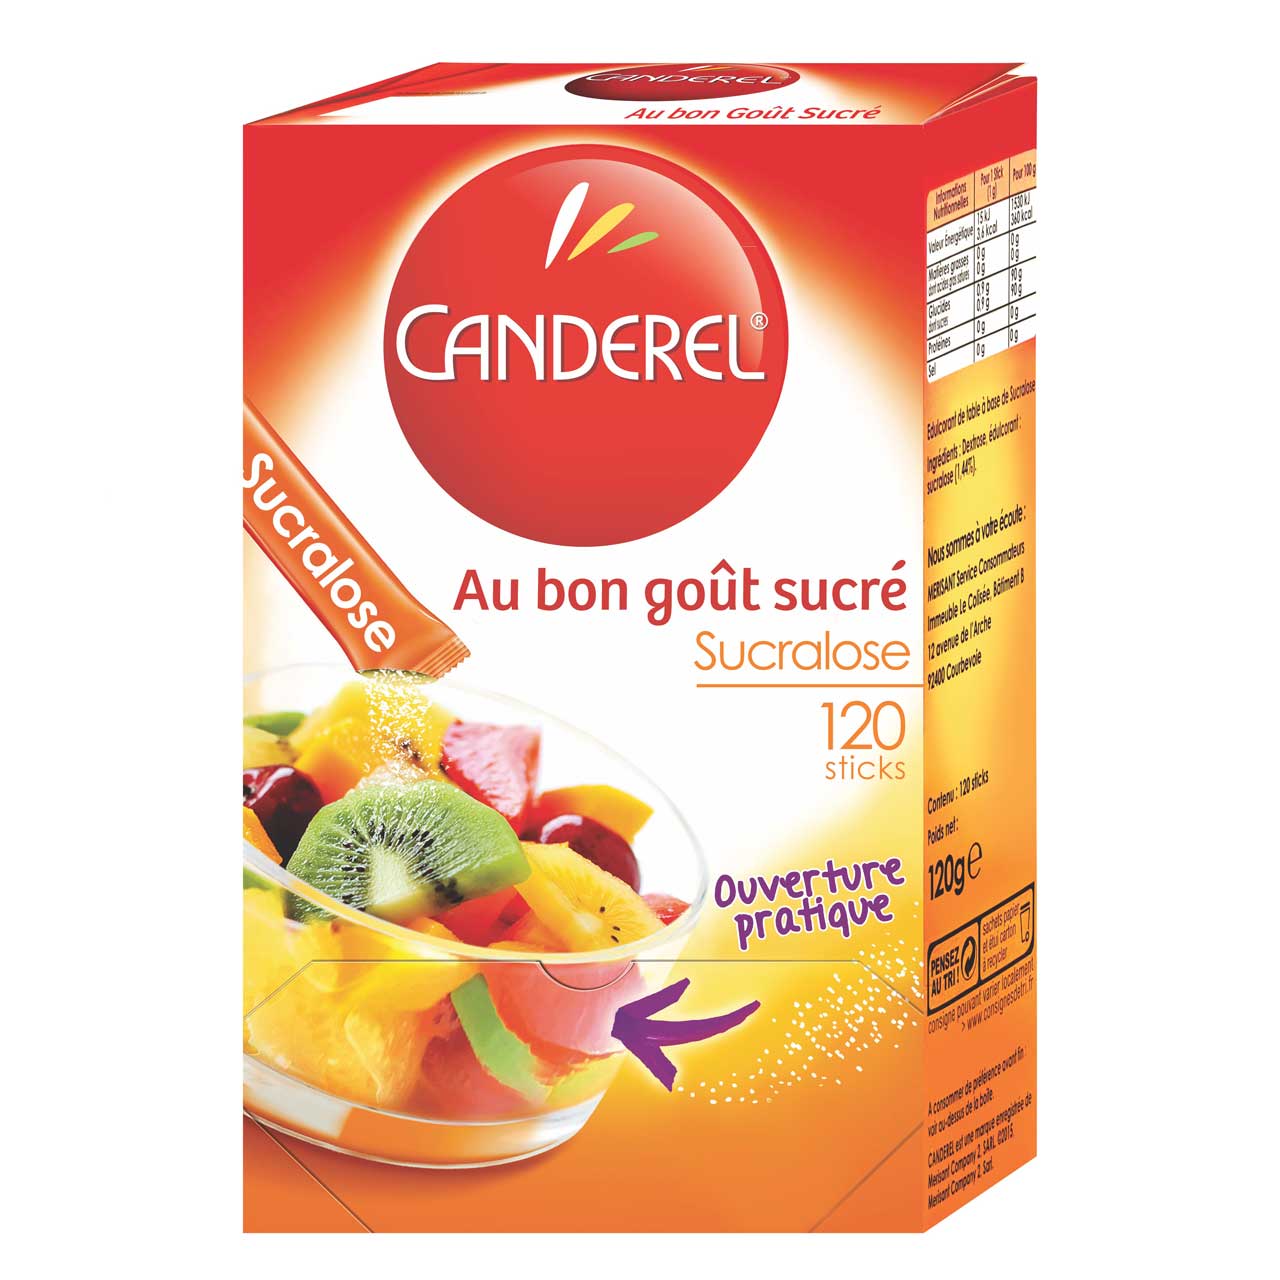 شیرین کننده کاندرل مدل Sucralose